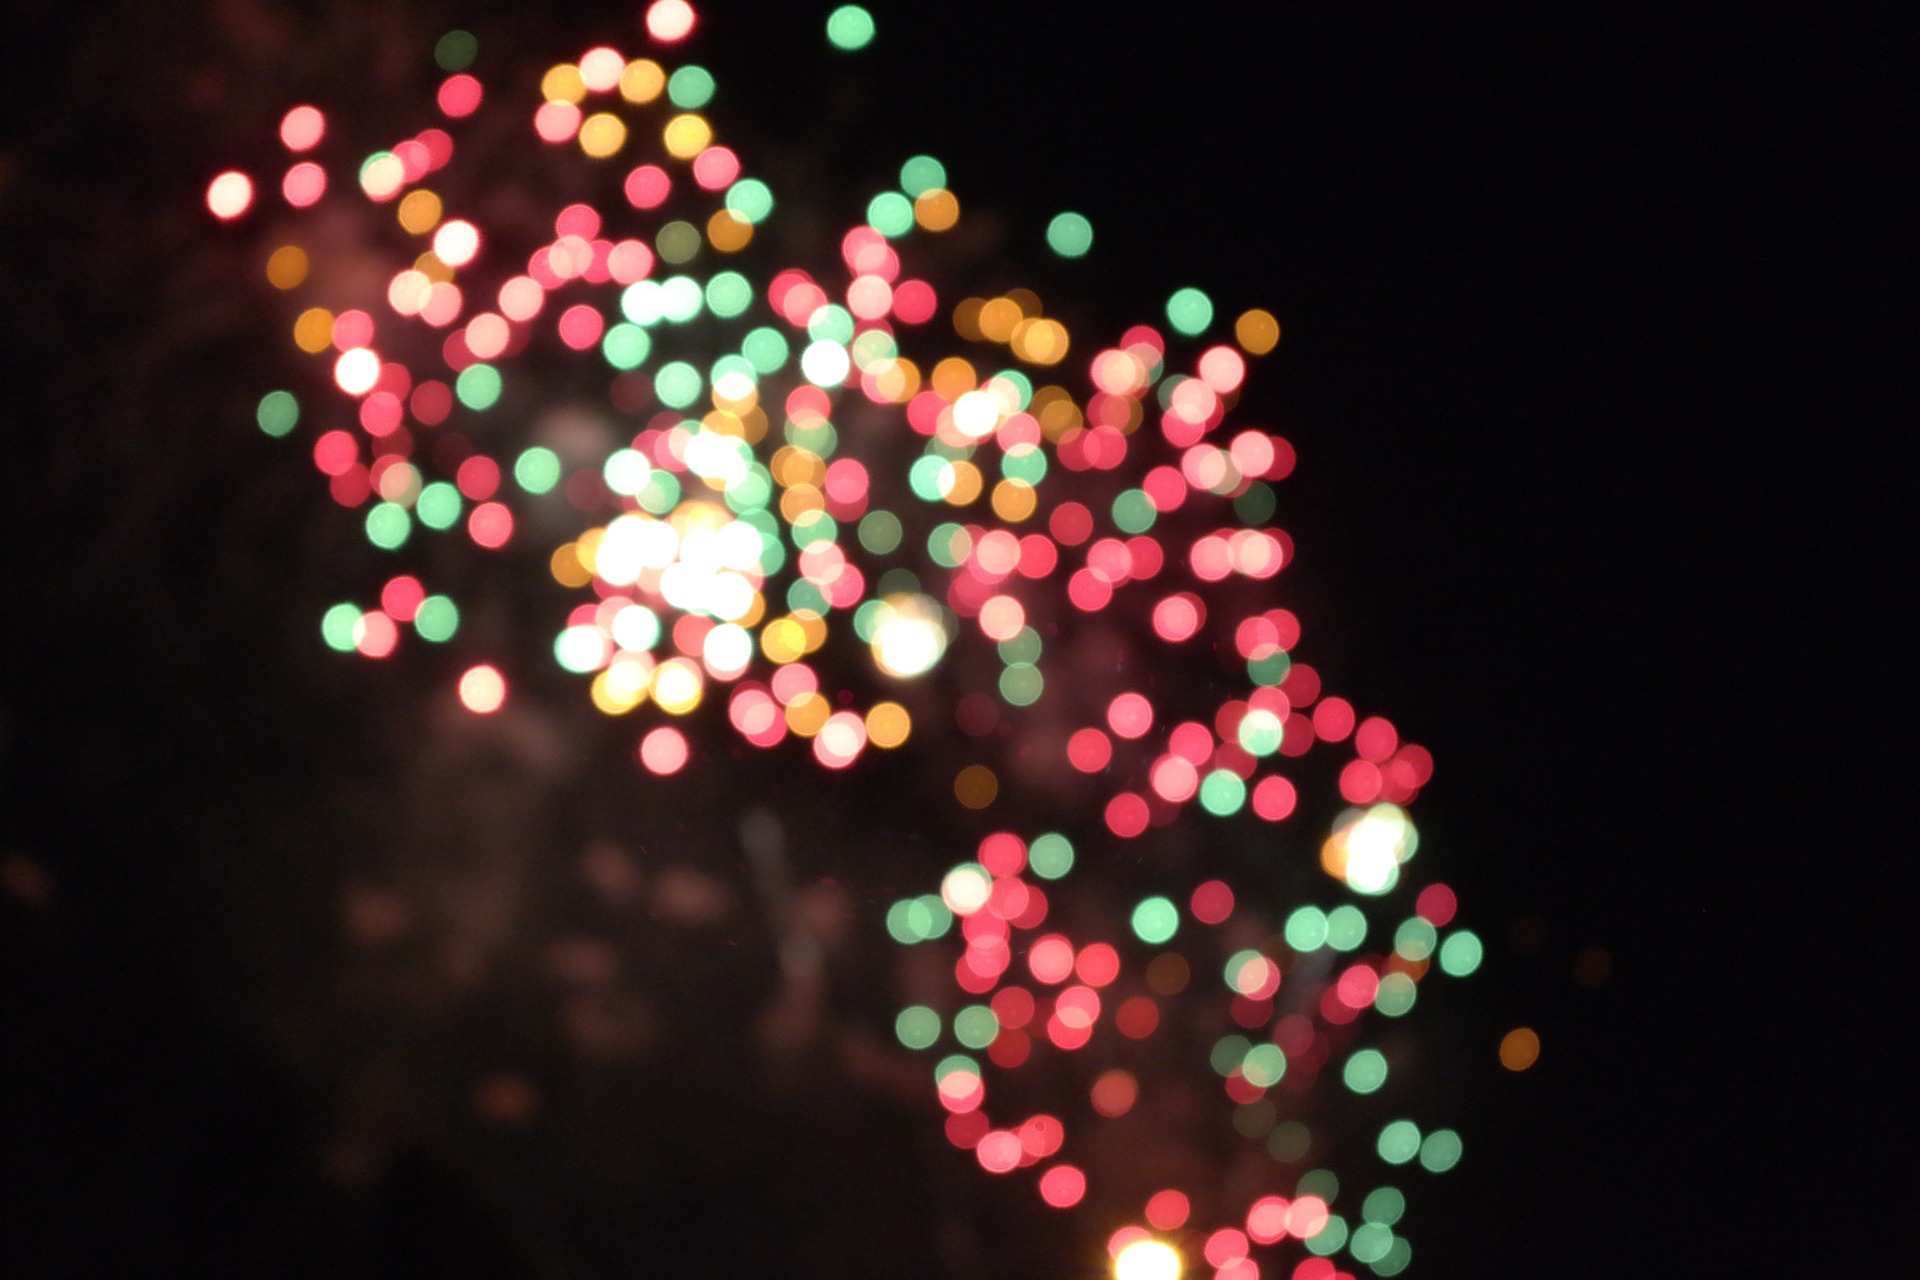 A blurred fireworks scene.